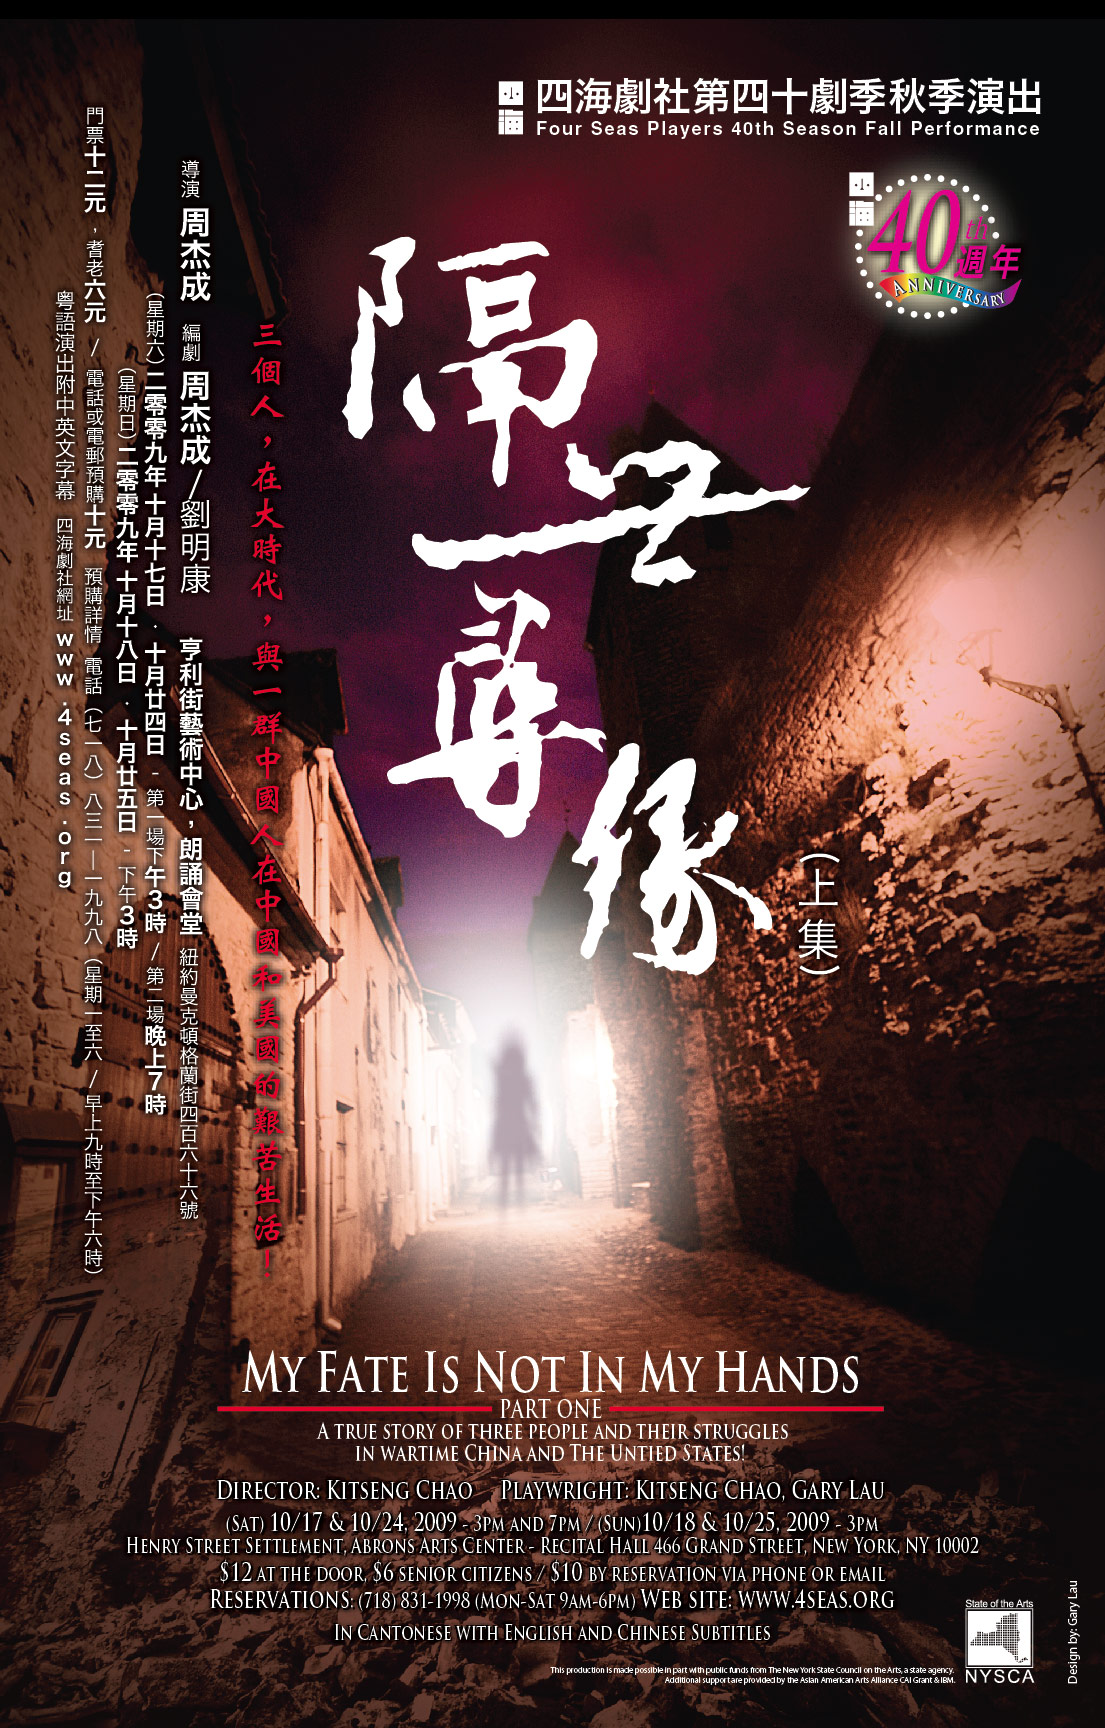 隔世尋緣 (上集)  • My Fate Is Not in My Hands (Part 1)